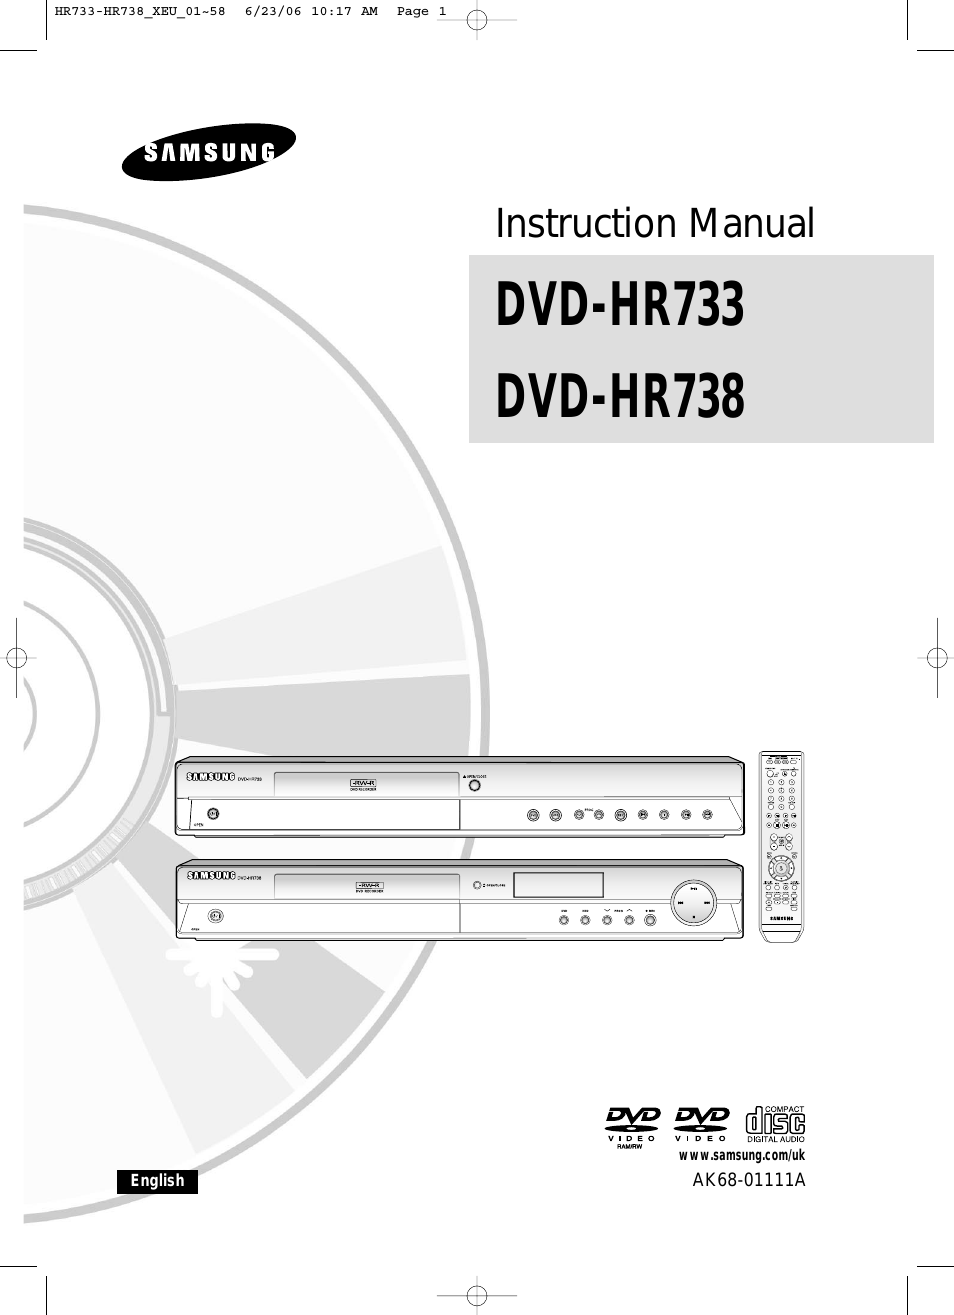 DVD-HR738/